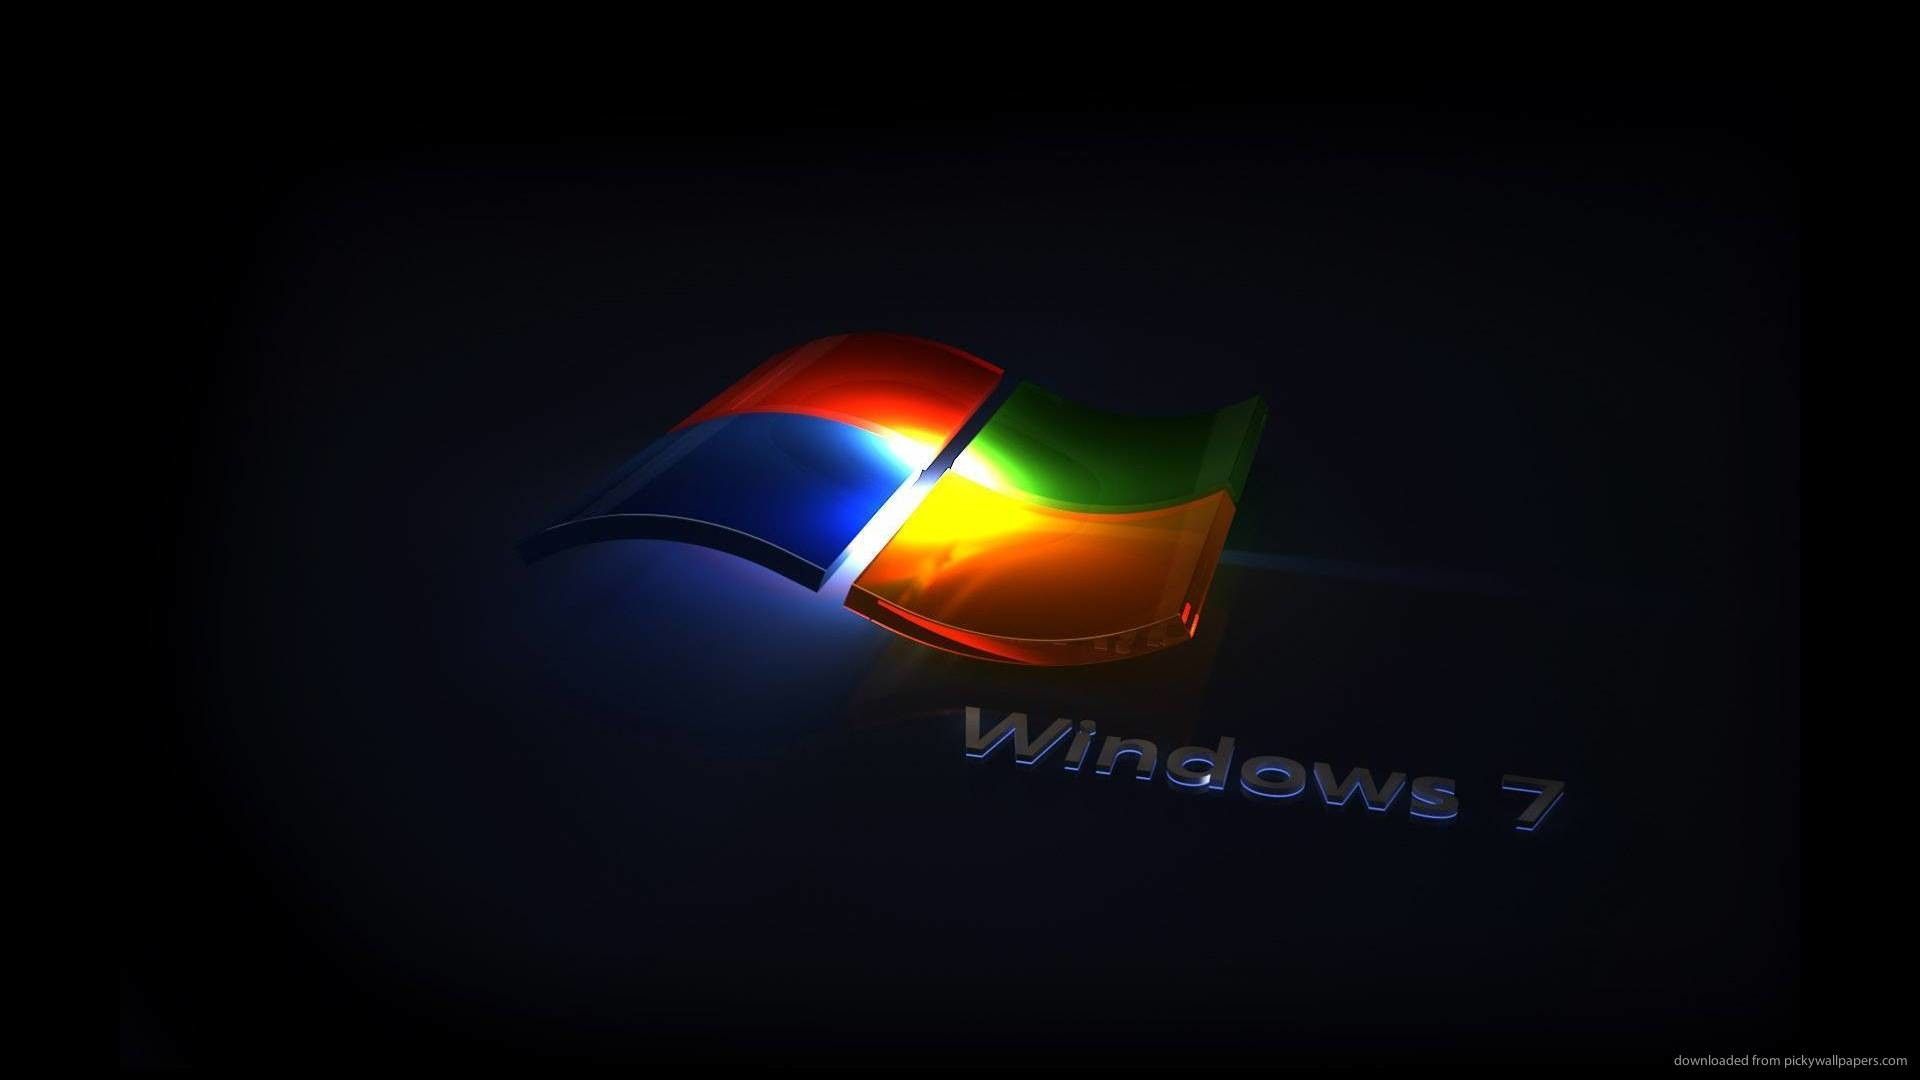 Windows 7 Wallpaper HD 1920x1080 (más de 54 imágenes)